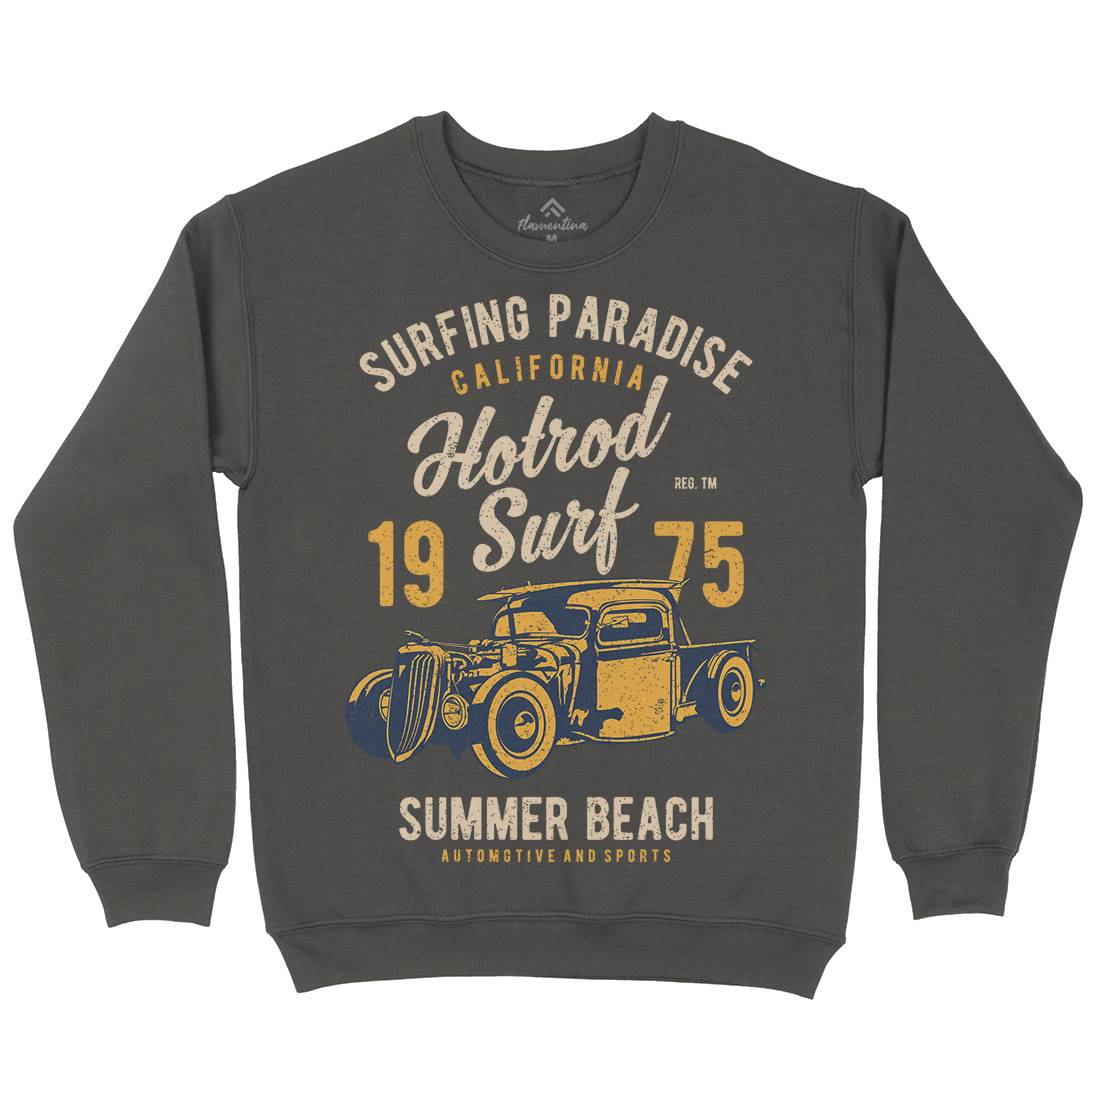 Hotrod Kids Crew Neck Sweatshirt Surf A688